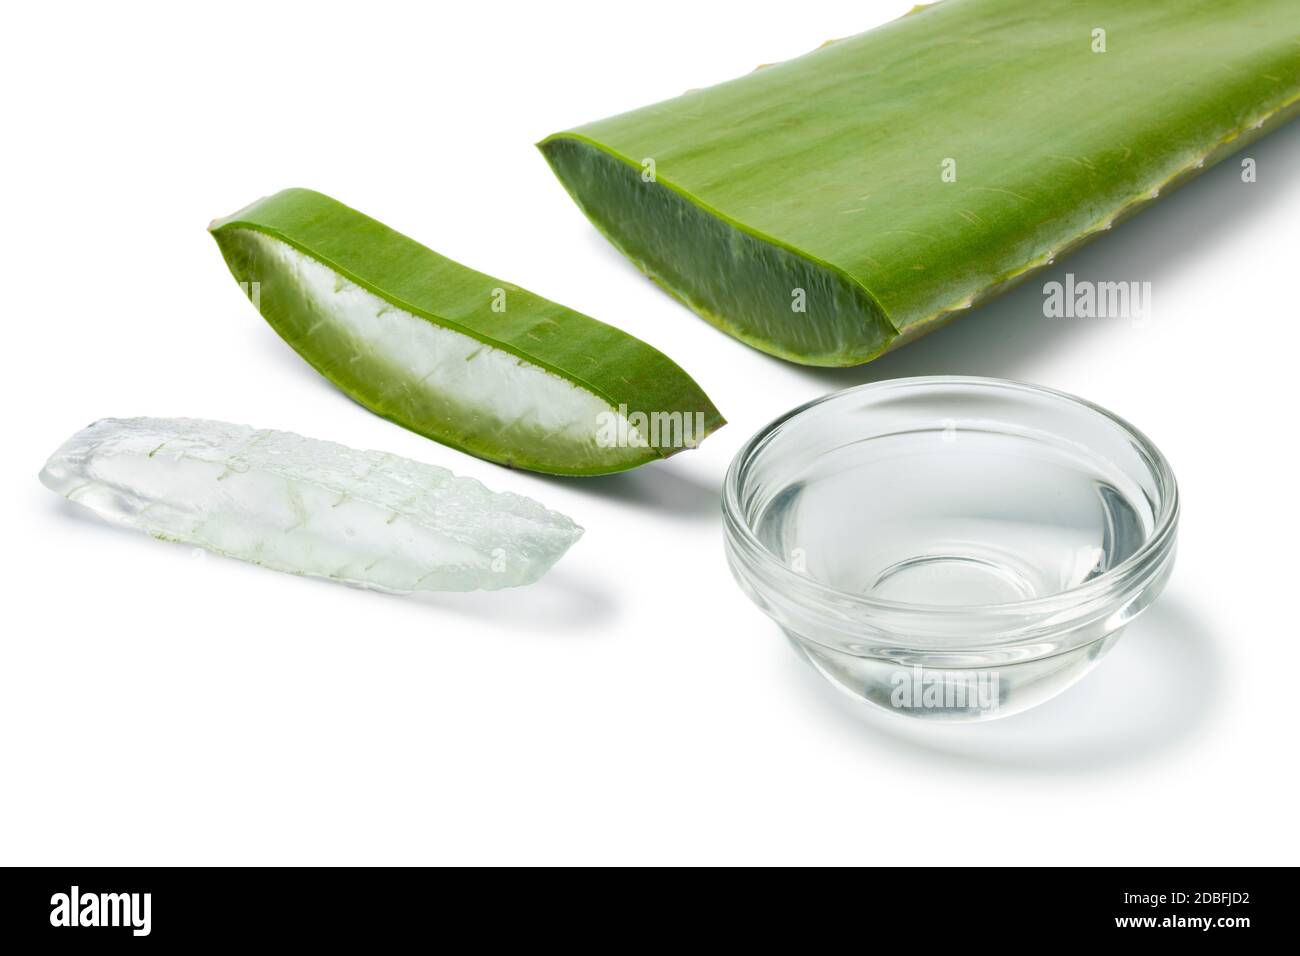 Foglia verde di aloe vera, fetta e una ciotola di vetro con gel isolato su sfondo bianco primo piano Foto Stock